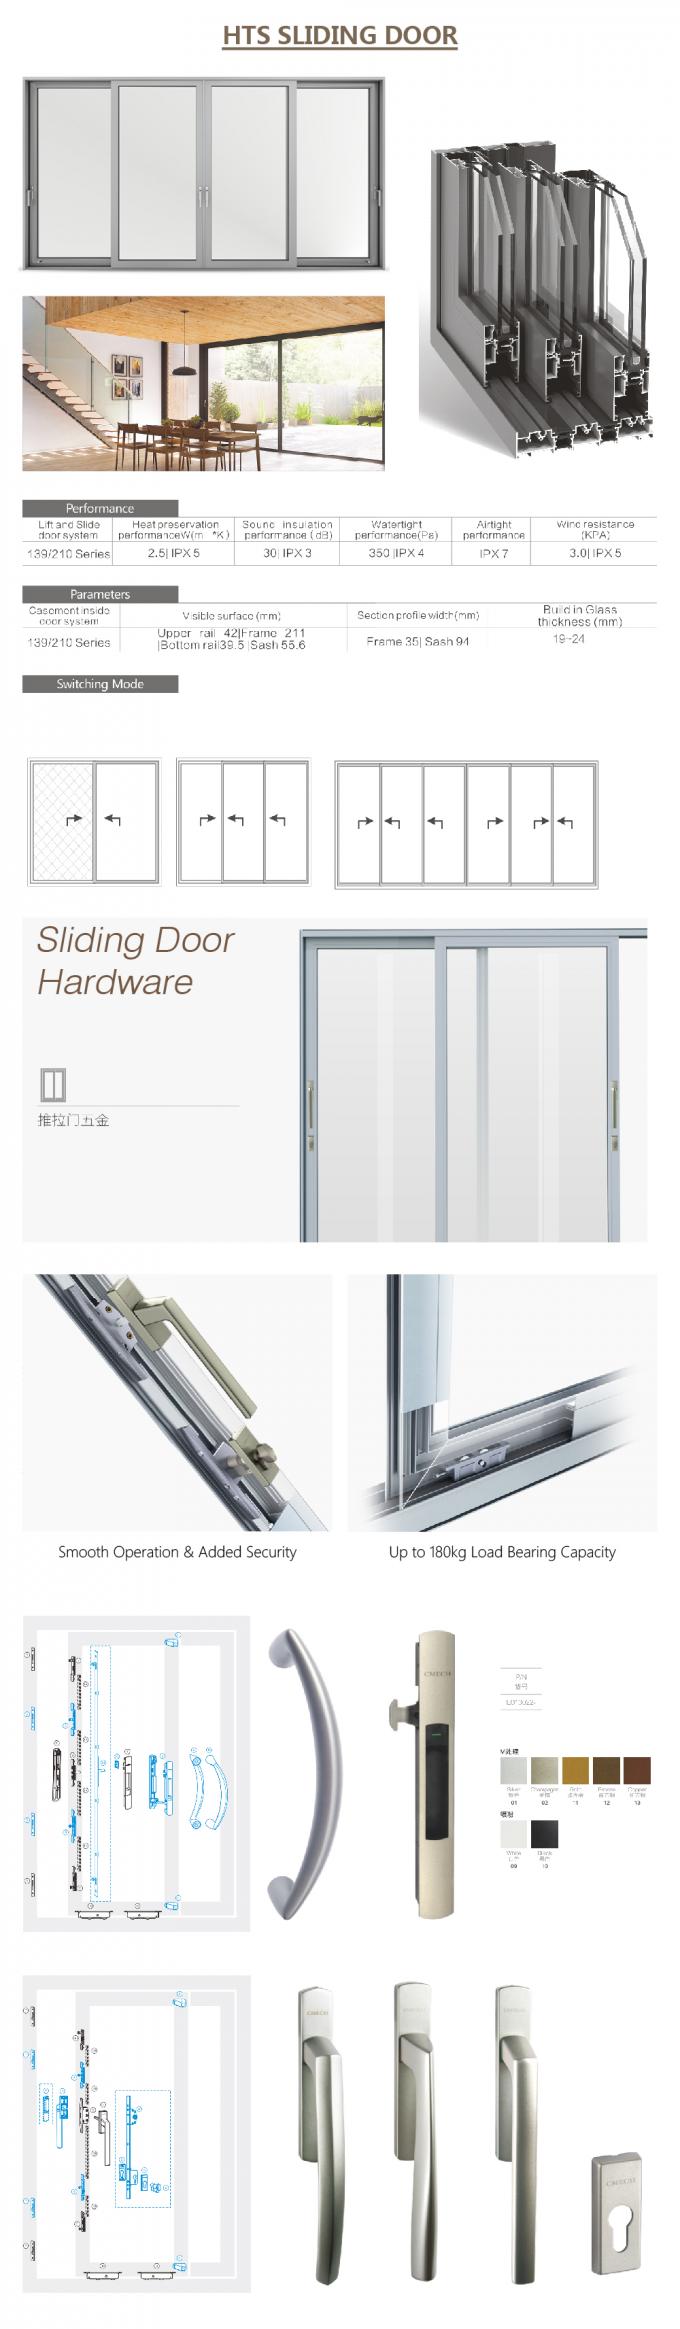 Bifold раздвижная дверь, китайская раздвижная дверь, алюминиевый профиль для сползая стеклянной двери, автоматической двери сползая, стеклянной алюминиевой раздвижной двери, алюминиевых деталей раздвижной двери